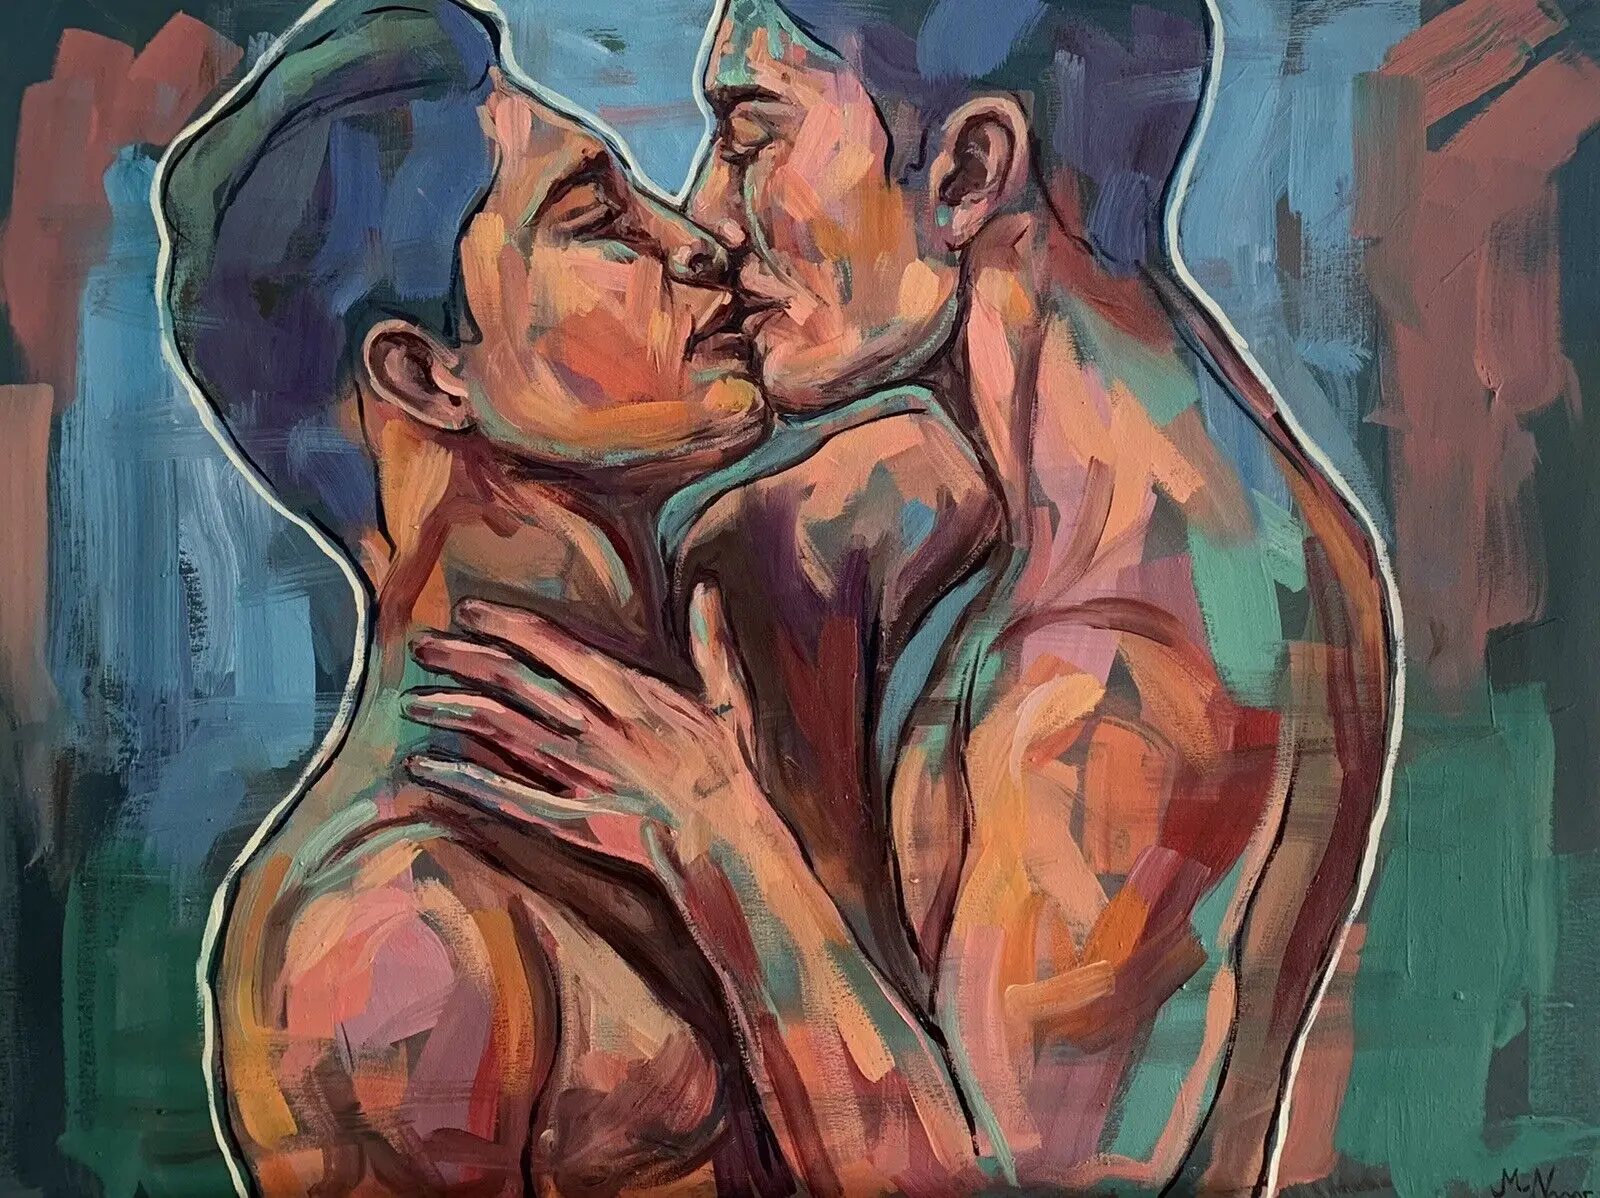 

100% handpainted Male Nude, Naked Man, Gay Erotic Queer Art, Men Kiss Oil Painting Homoerotic